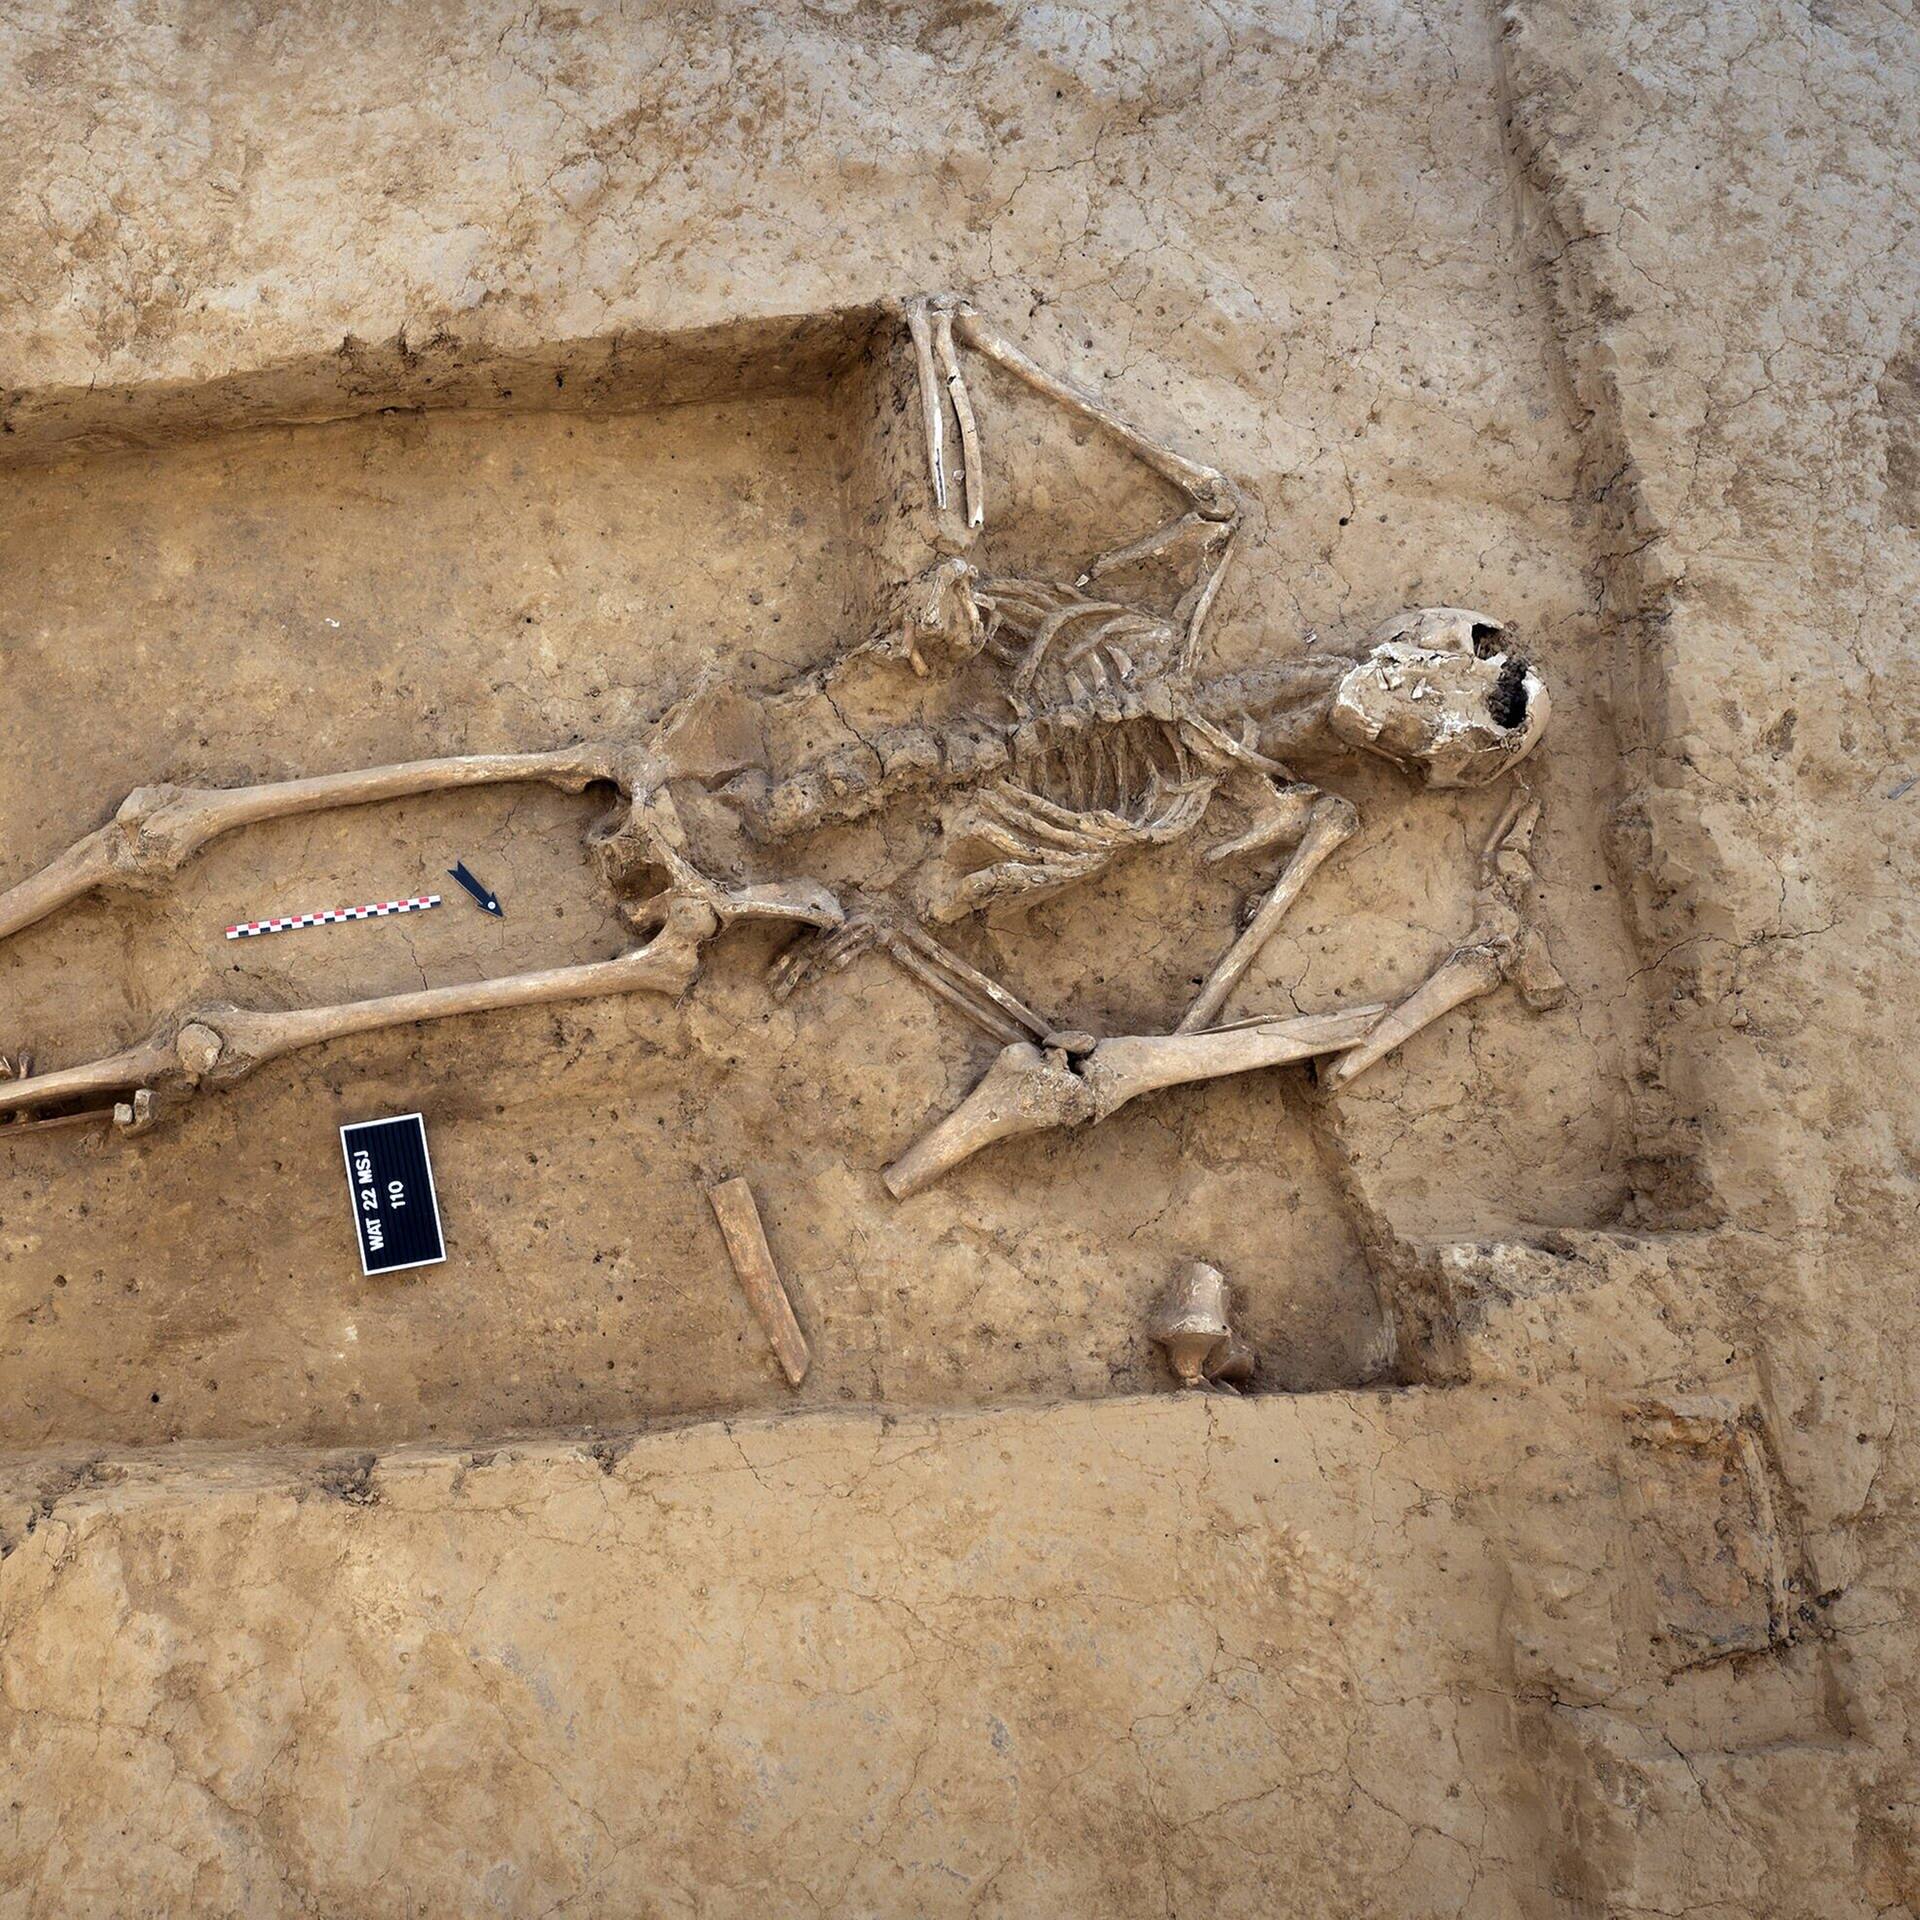 Eines der weningen Skelette, die auf dem Schlachtfeld von Waterloo heute noch zu finden sind. Der Rest ist wohl in Zuckerfabriken gelandet. (Foto: IMAGO, IMAGO / Cover-Images)